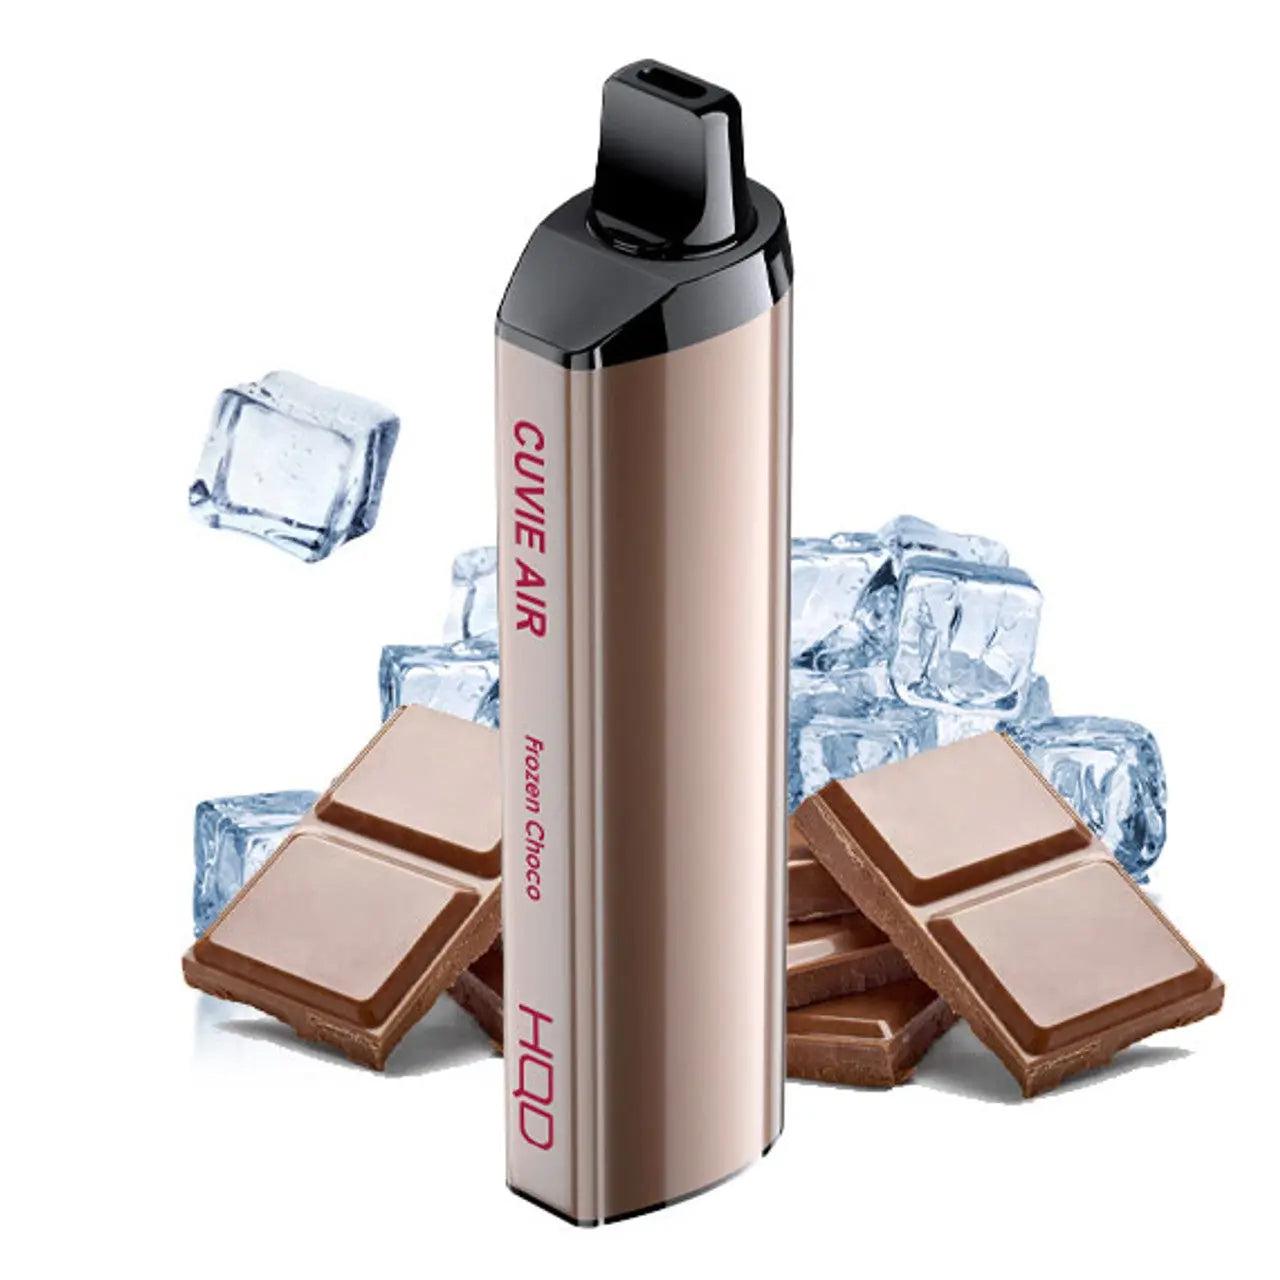 HQD Cuvie Air Frozen Choco Flavor - Disposable Vape